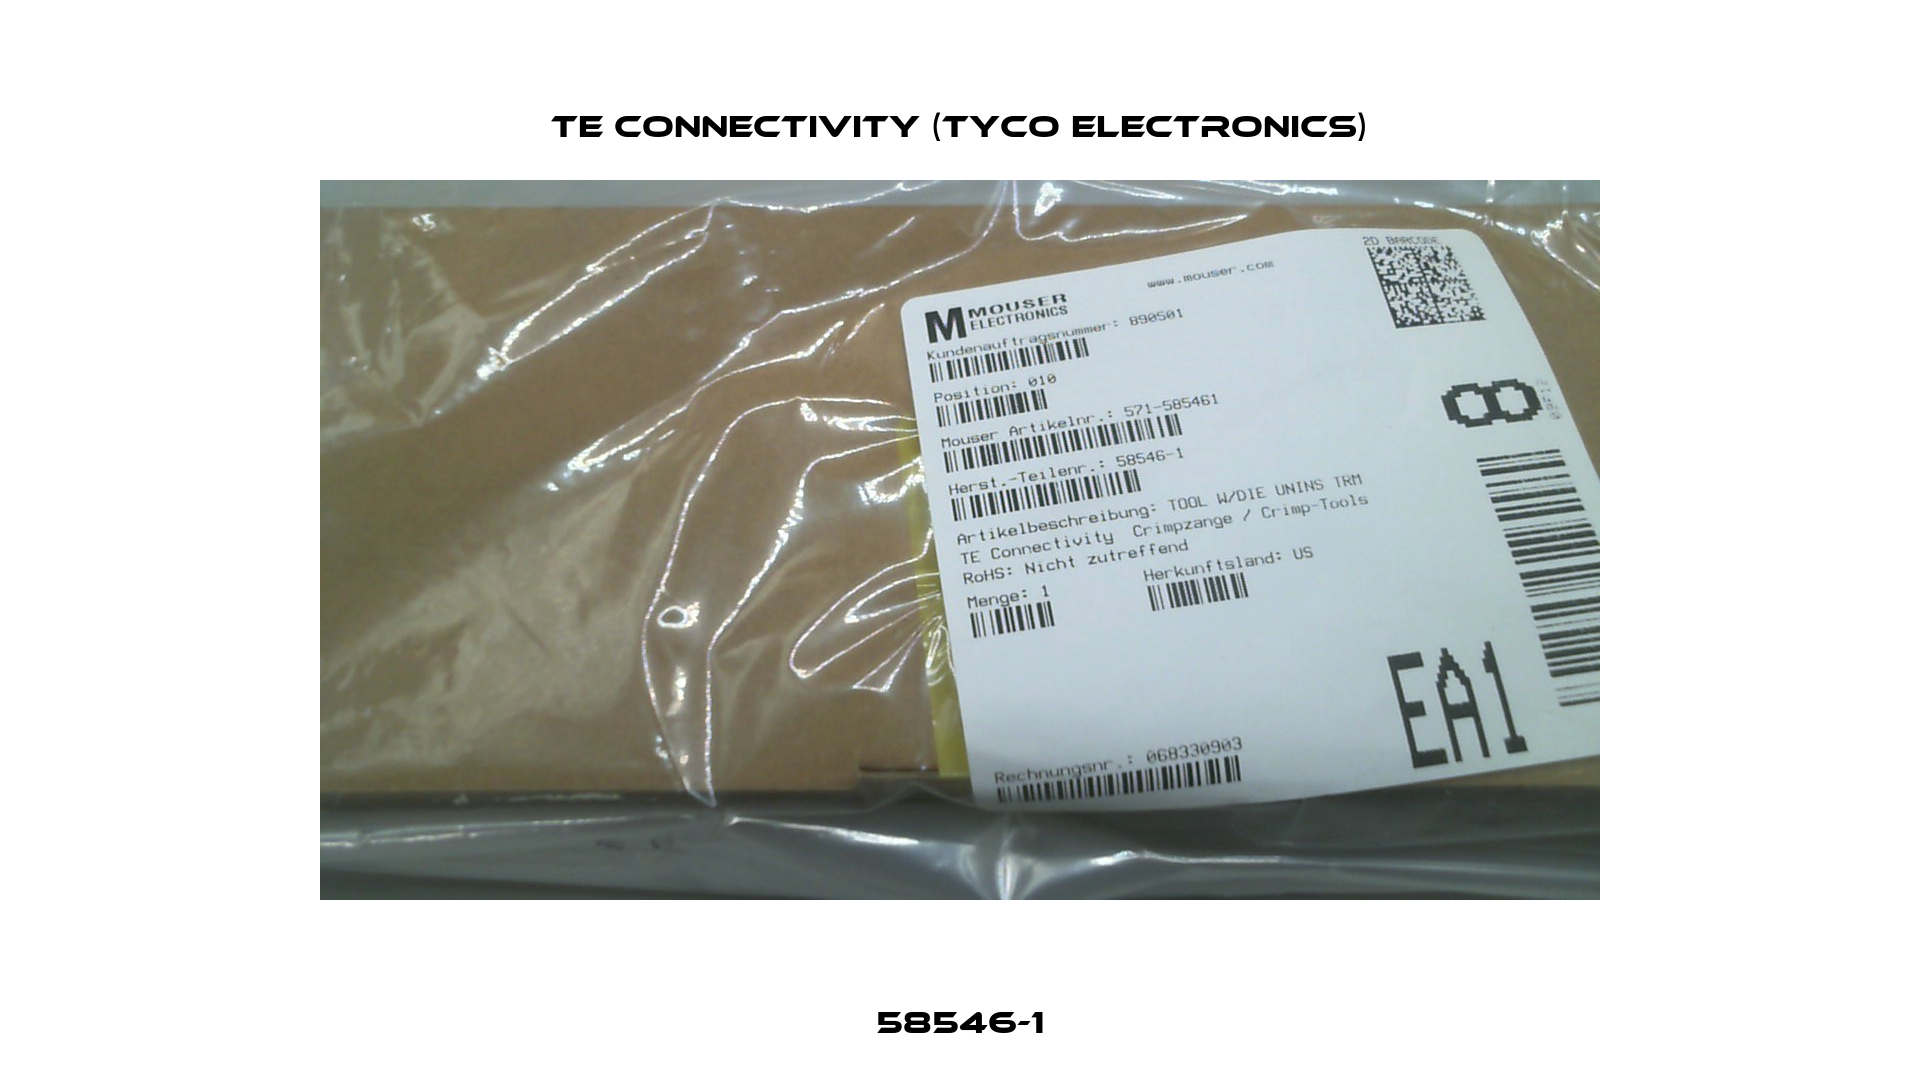 58546-1 TE Connectivity (Tyco Electronics)